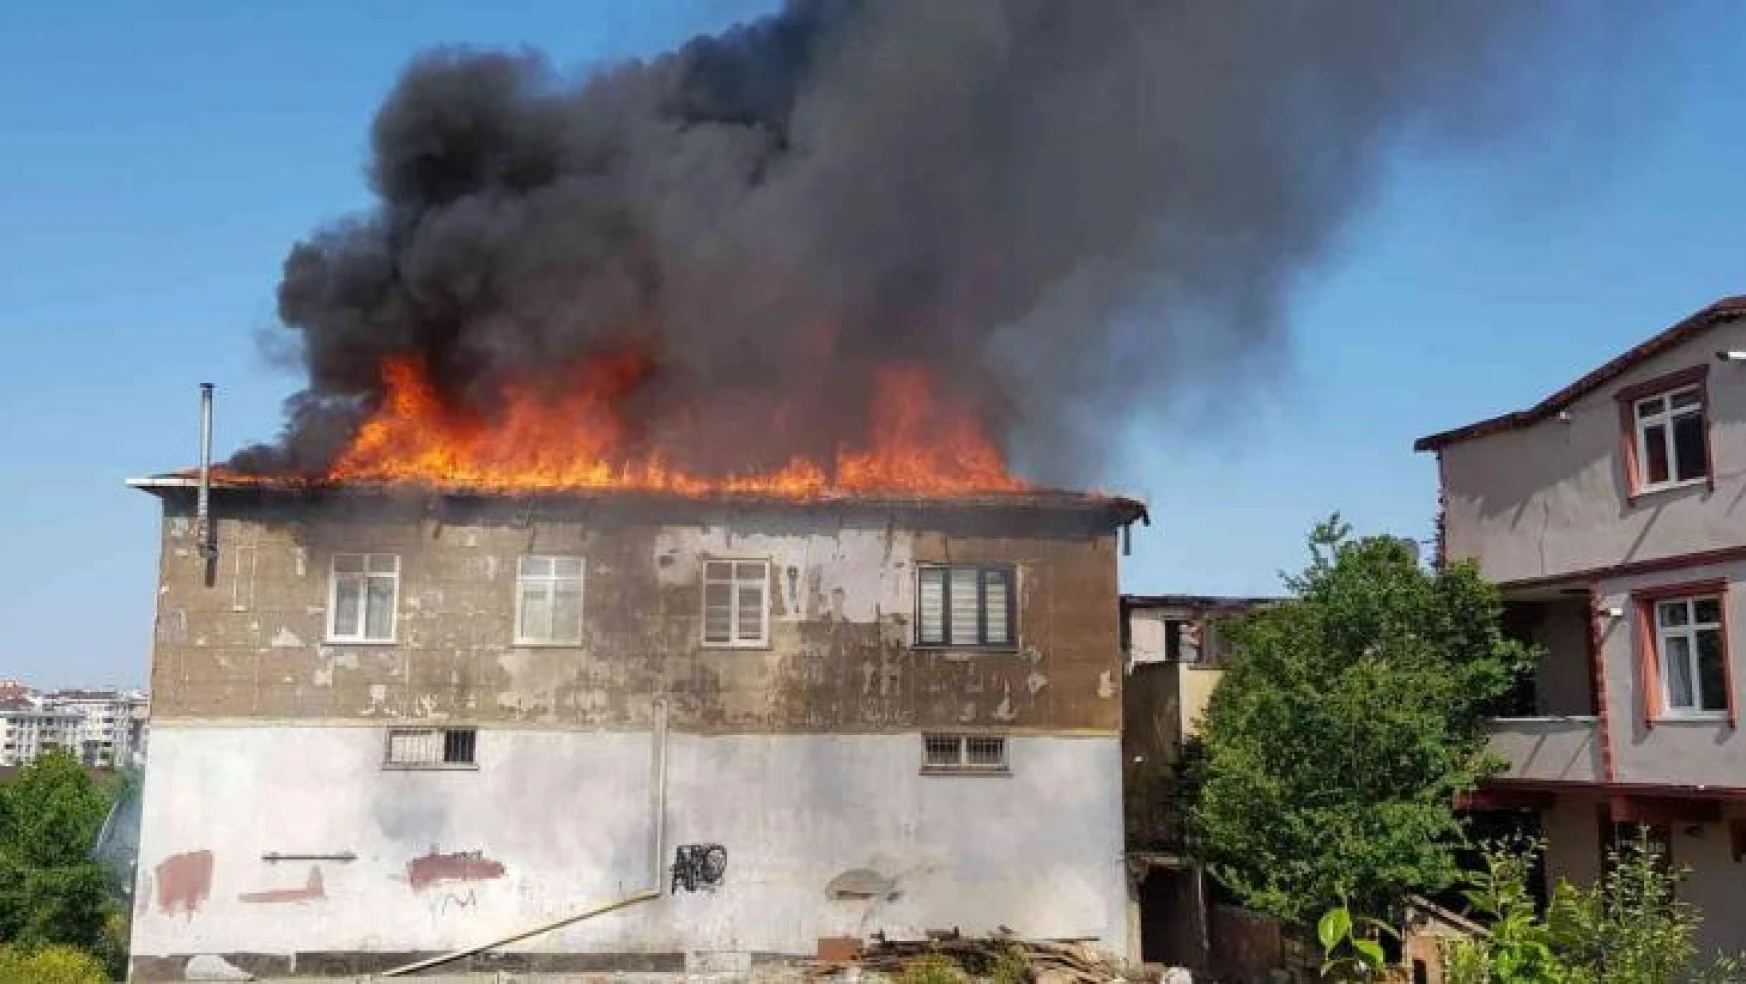 Ümraniye'de 2 katlı bir binanın çatısında yangın çıktı. Olay yerine çok sayıda itfaiye ekibi sevk edildi. Ekiplerin yangına müdahalesi sürüyor.